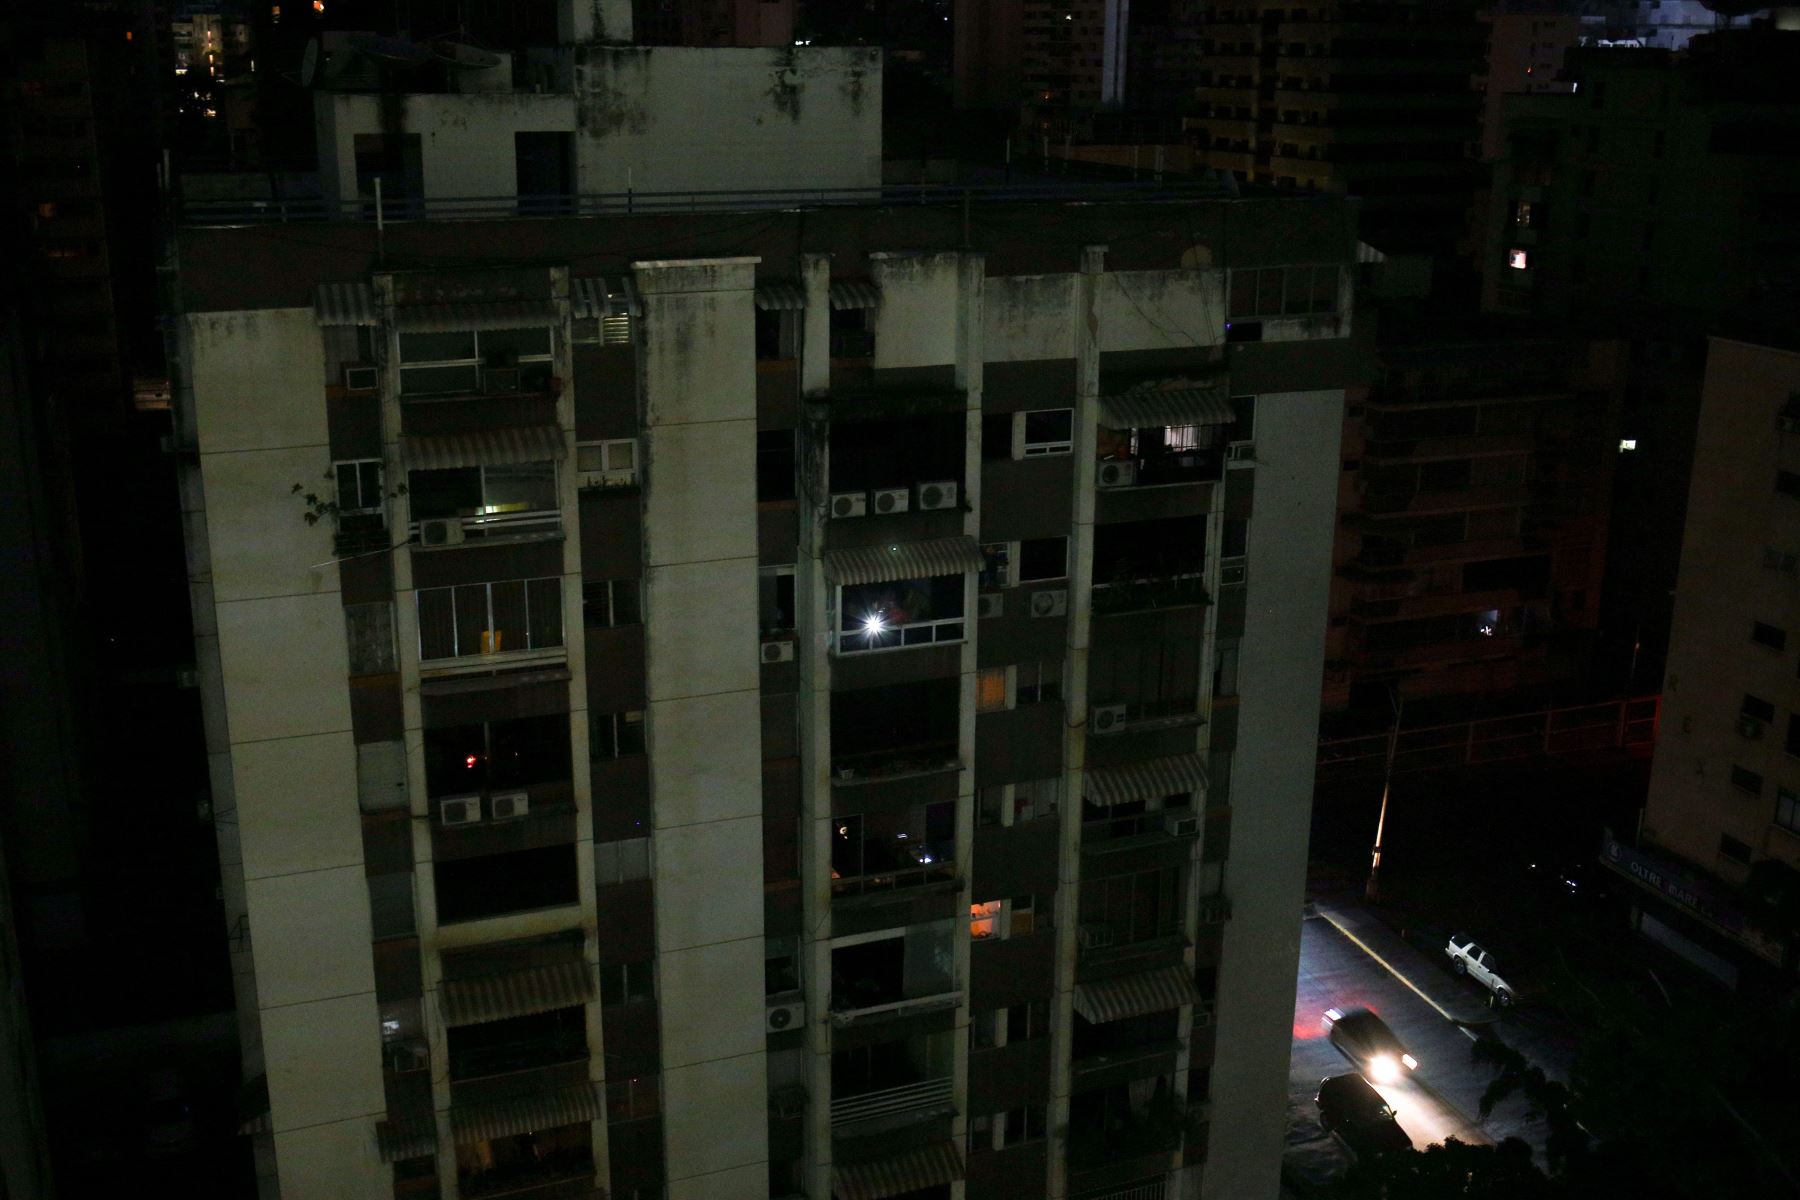 Vista general del vecindario de Los Palos Grandes parcialmente iluminado durante un corte de energía en Caracas, Venezuela, el 27 de marzo de 2019. Foto: AFP